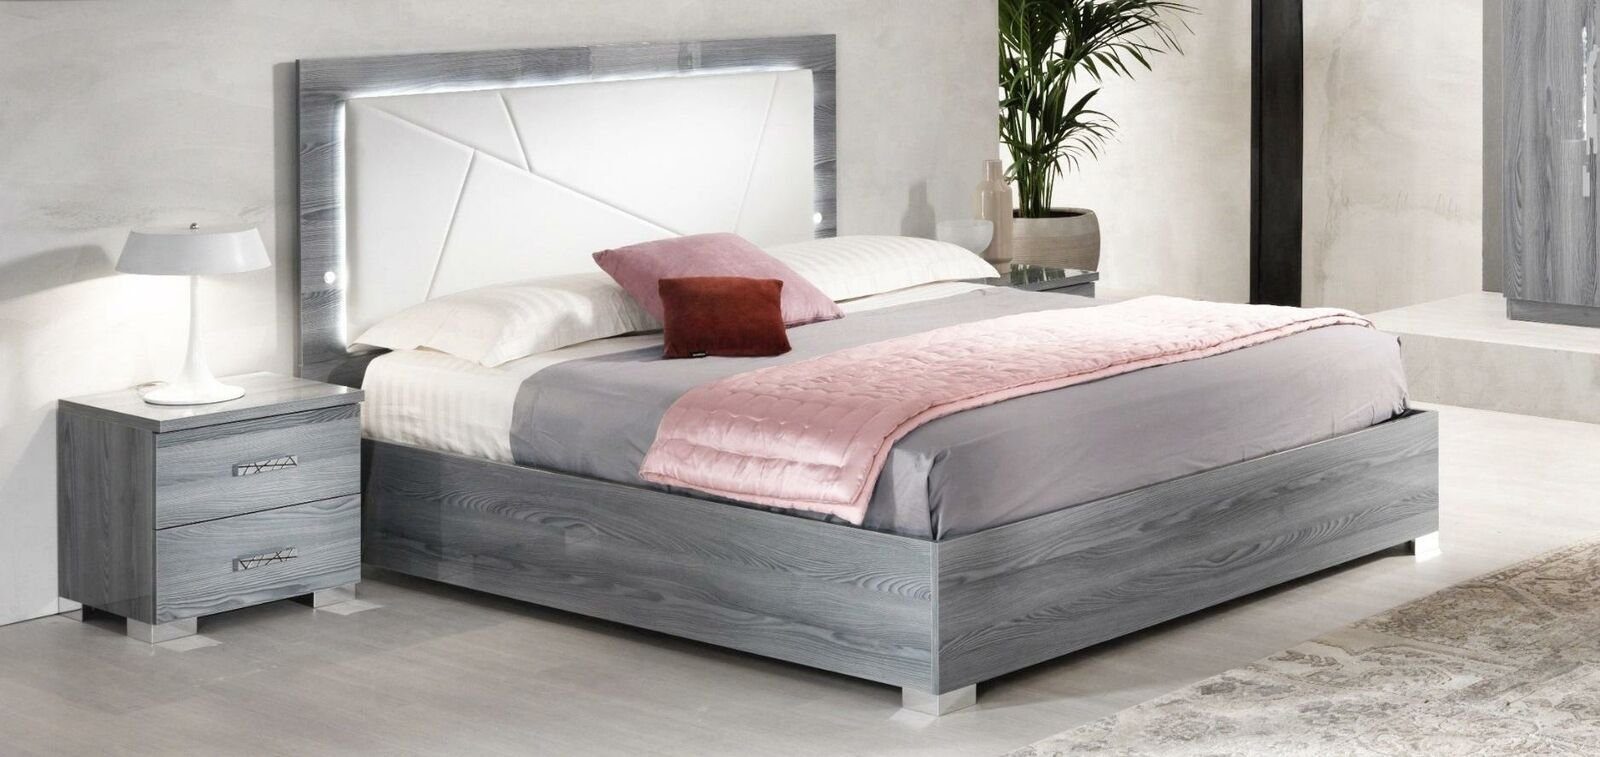 JVmoebel Bett Modern Bettten Grau Bett Italienisch Doppelbett Schlafzimmer SOFORT (1-tlg., Bett), Made in Italy